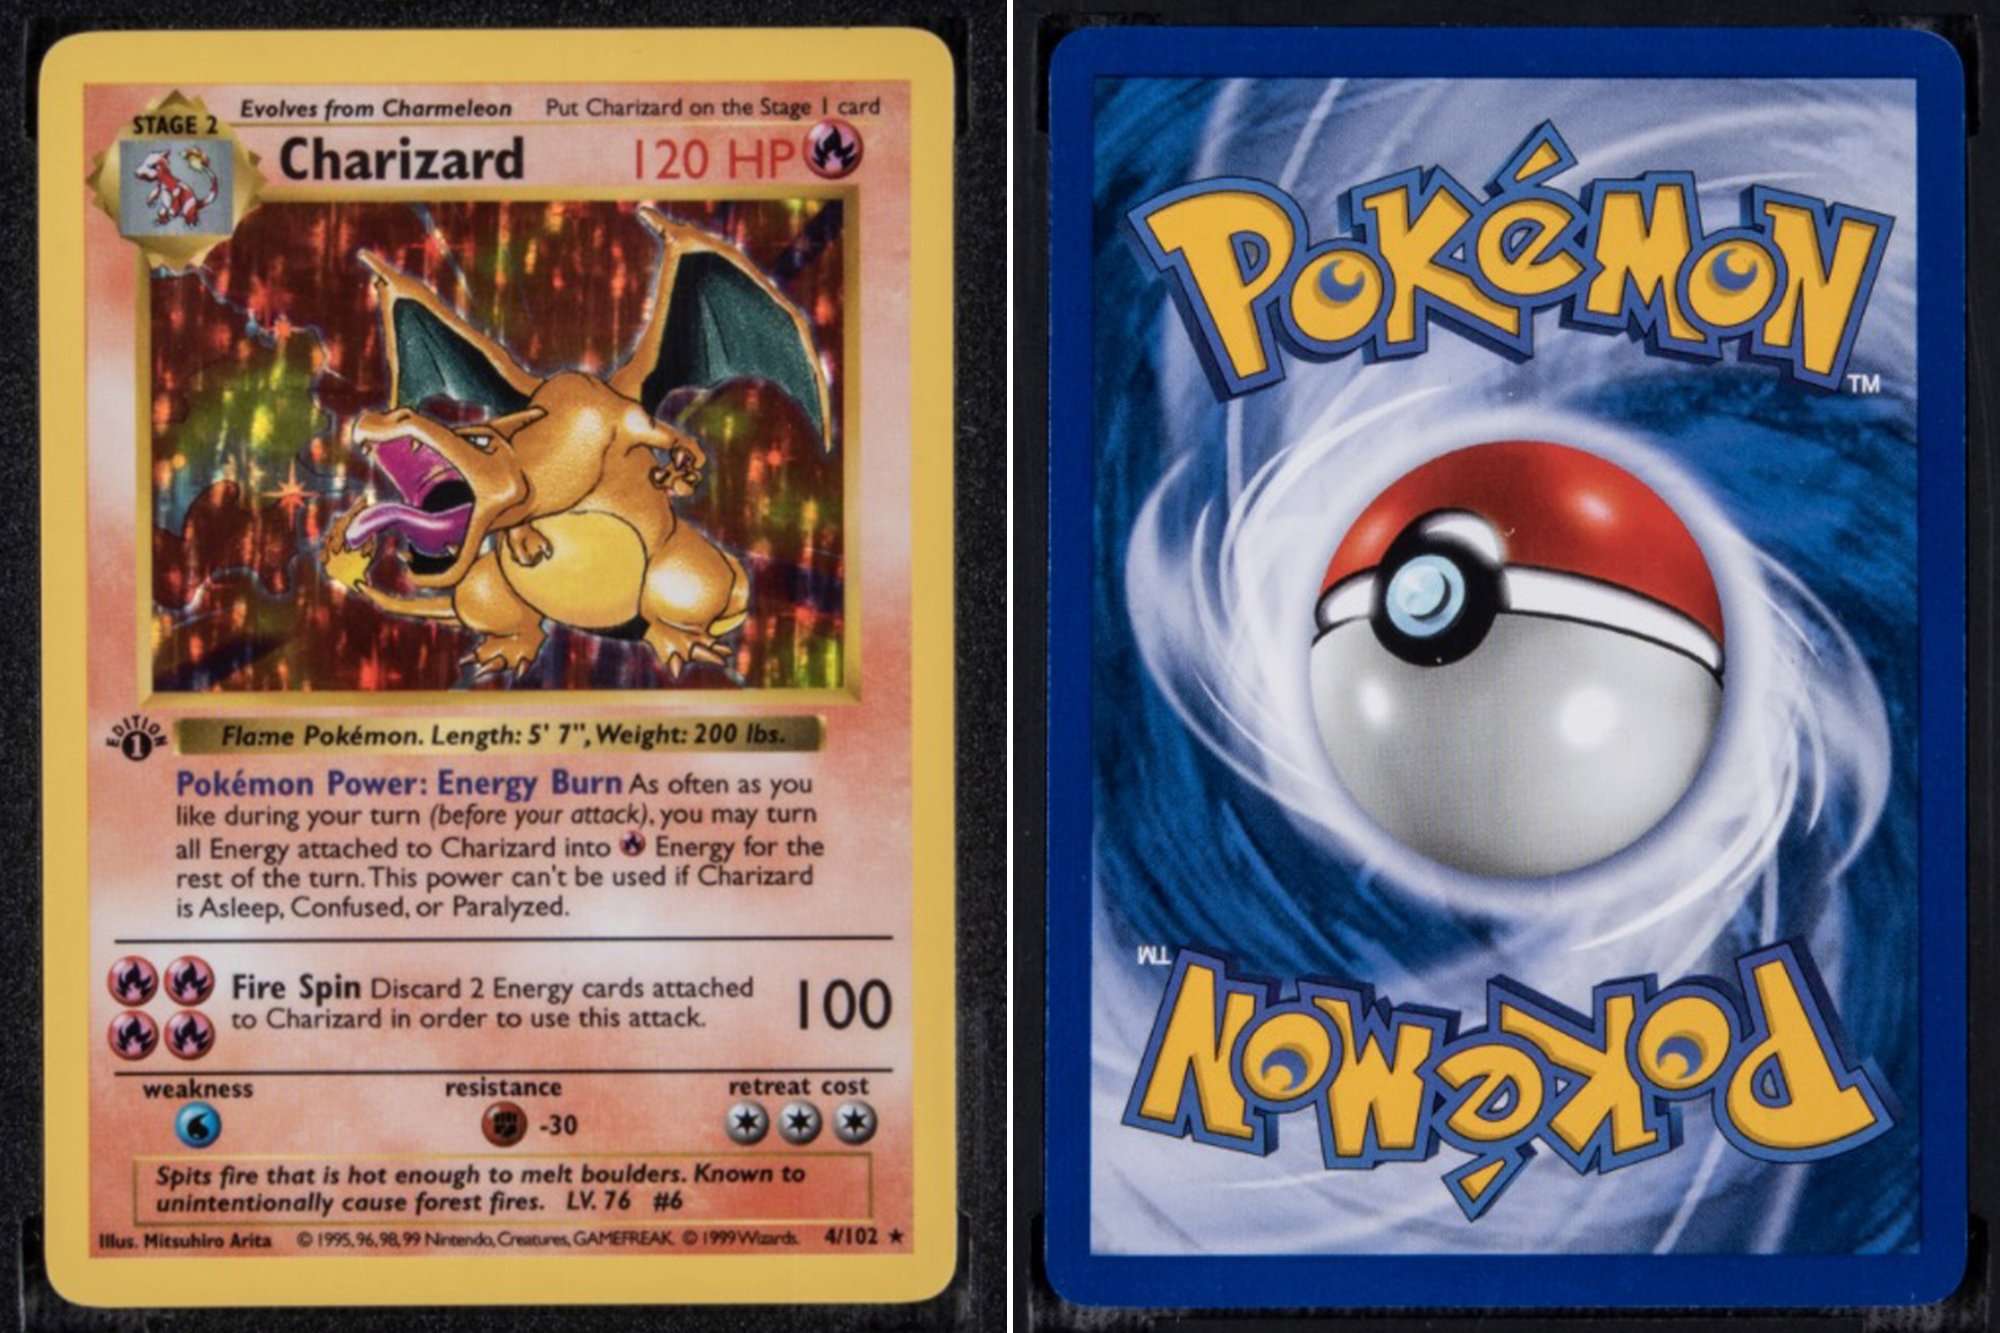 Rare Pokémon card already has $170K bid ahead of auction ...